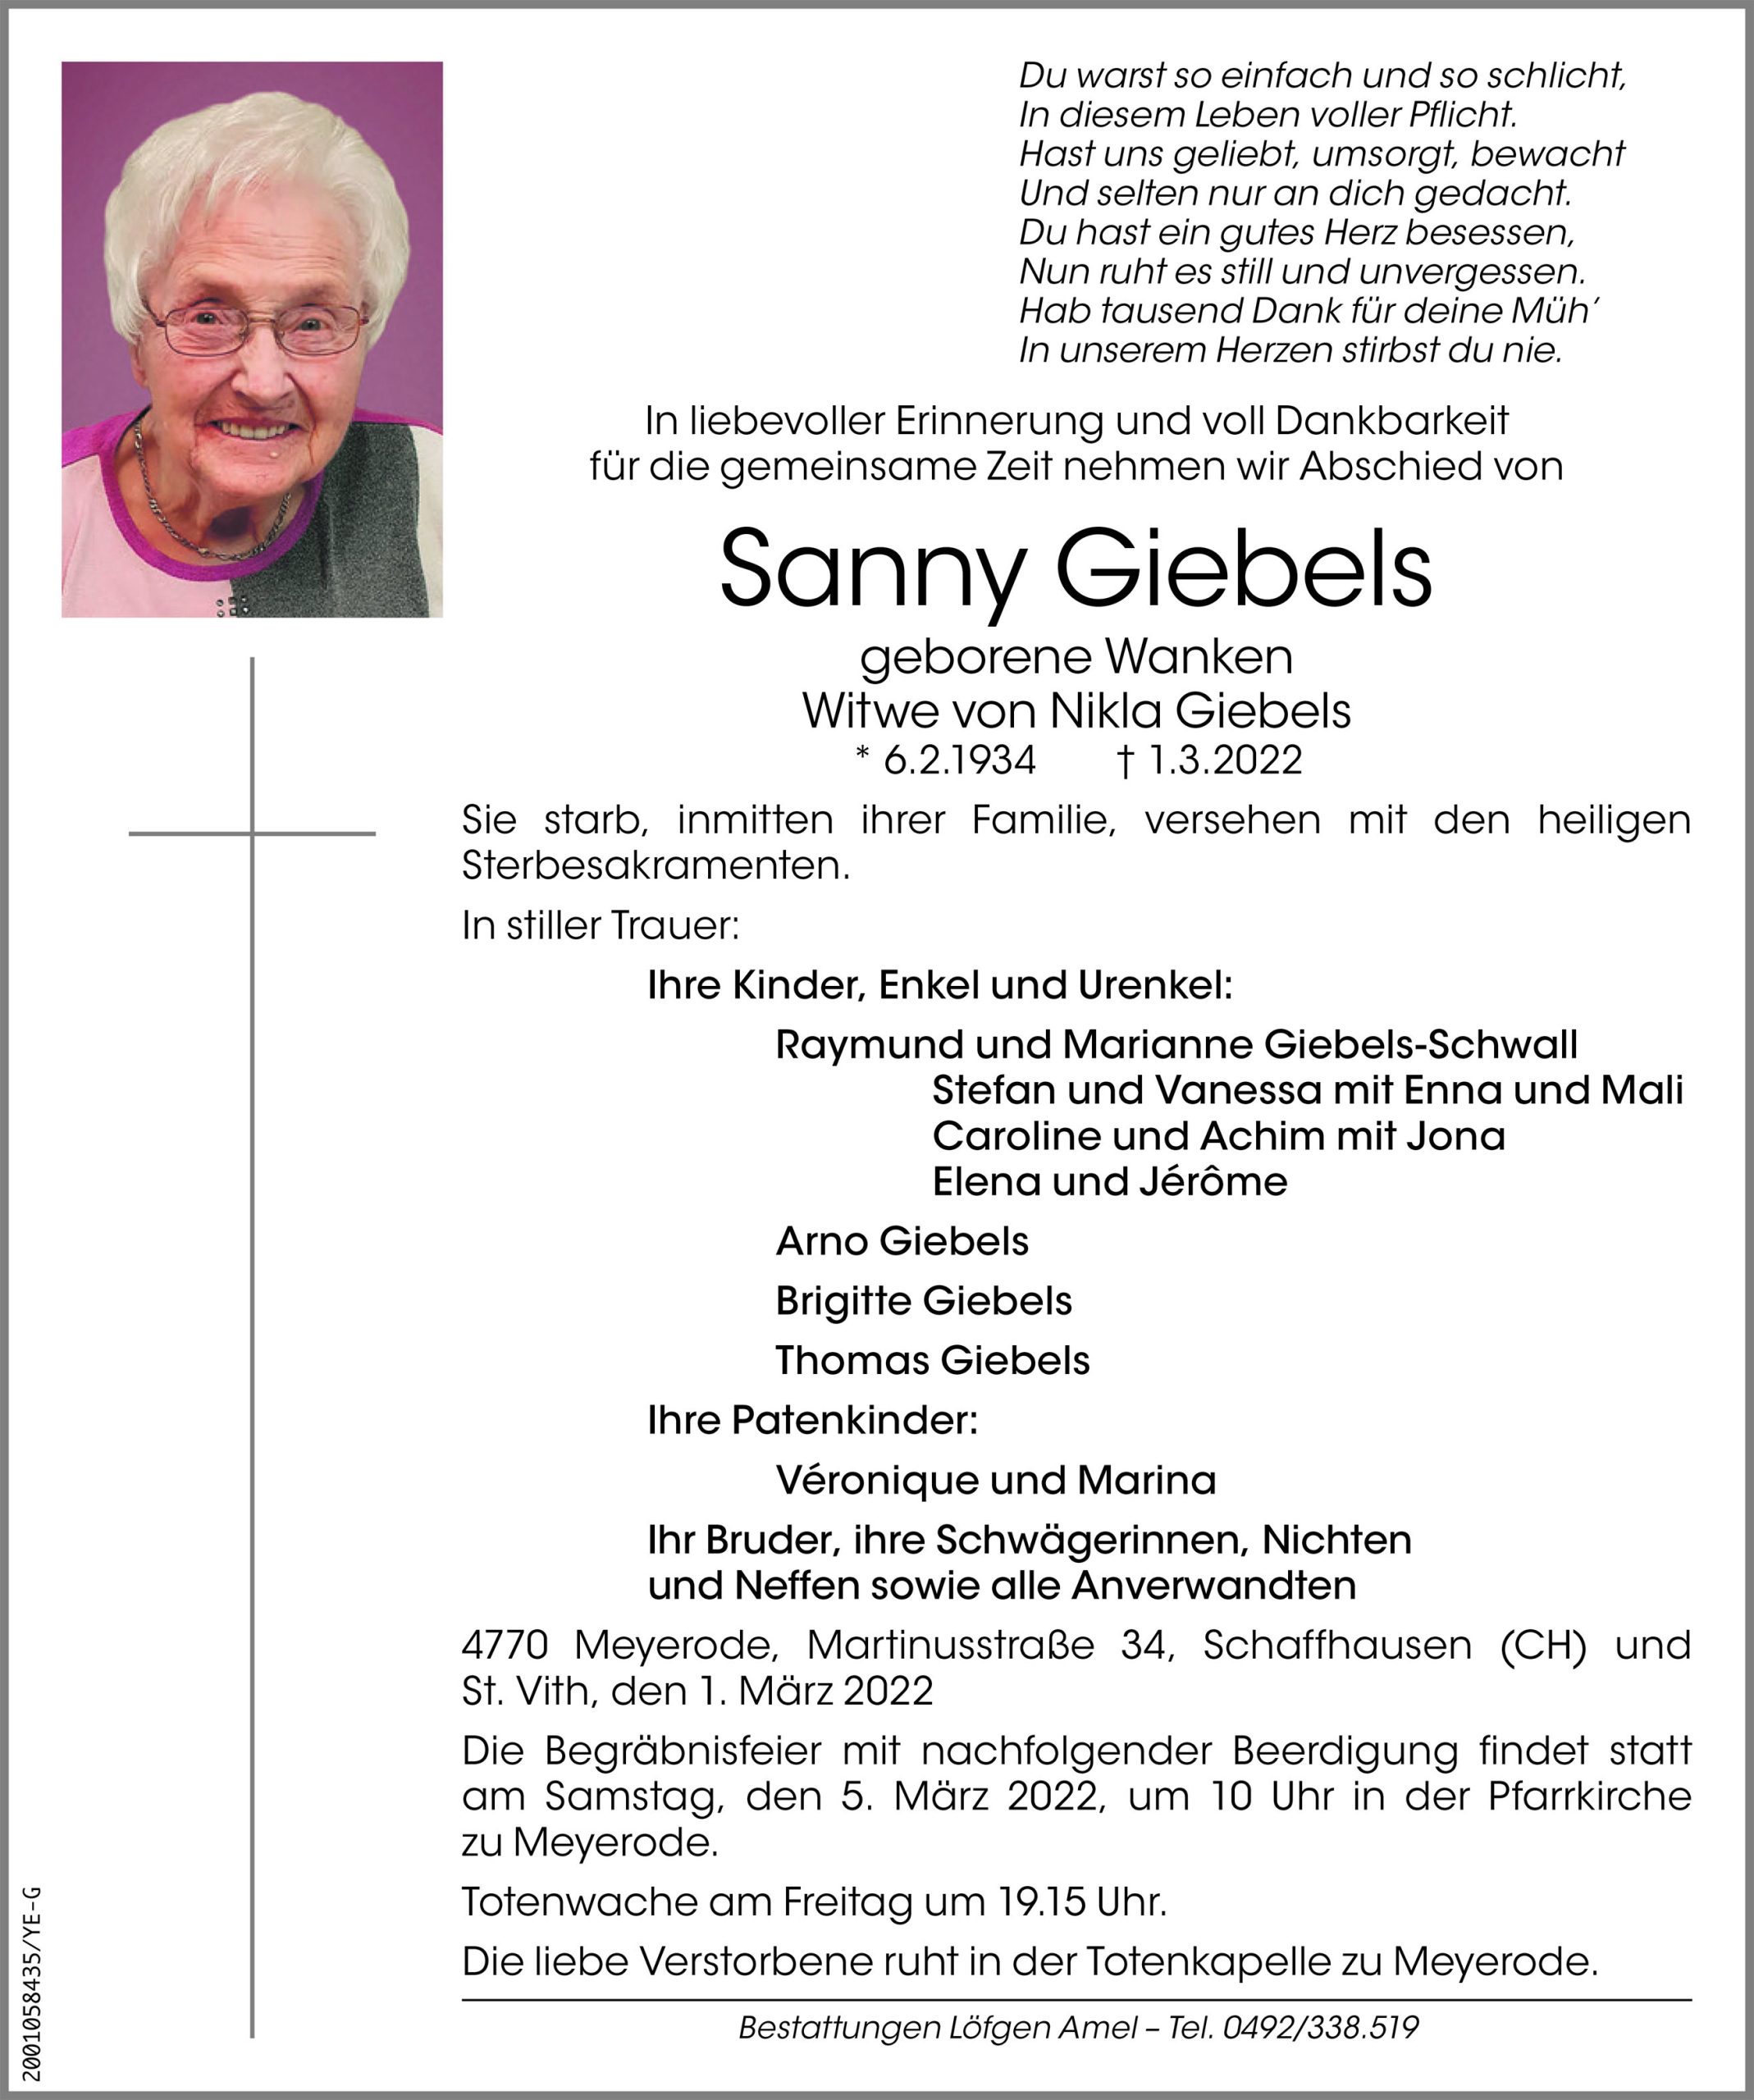 Sanny Giebels